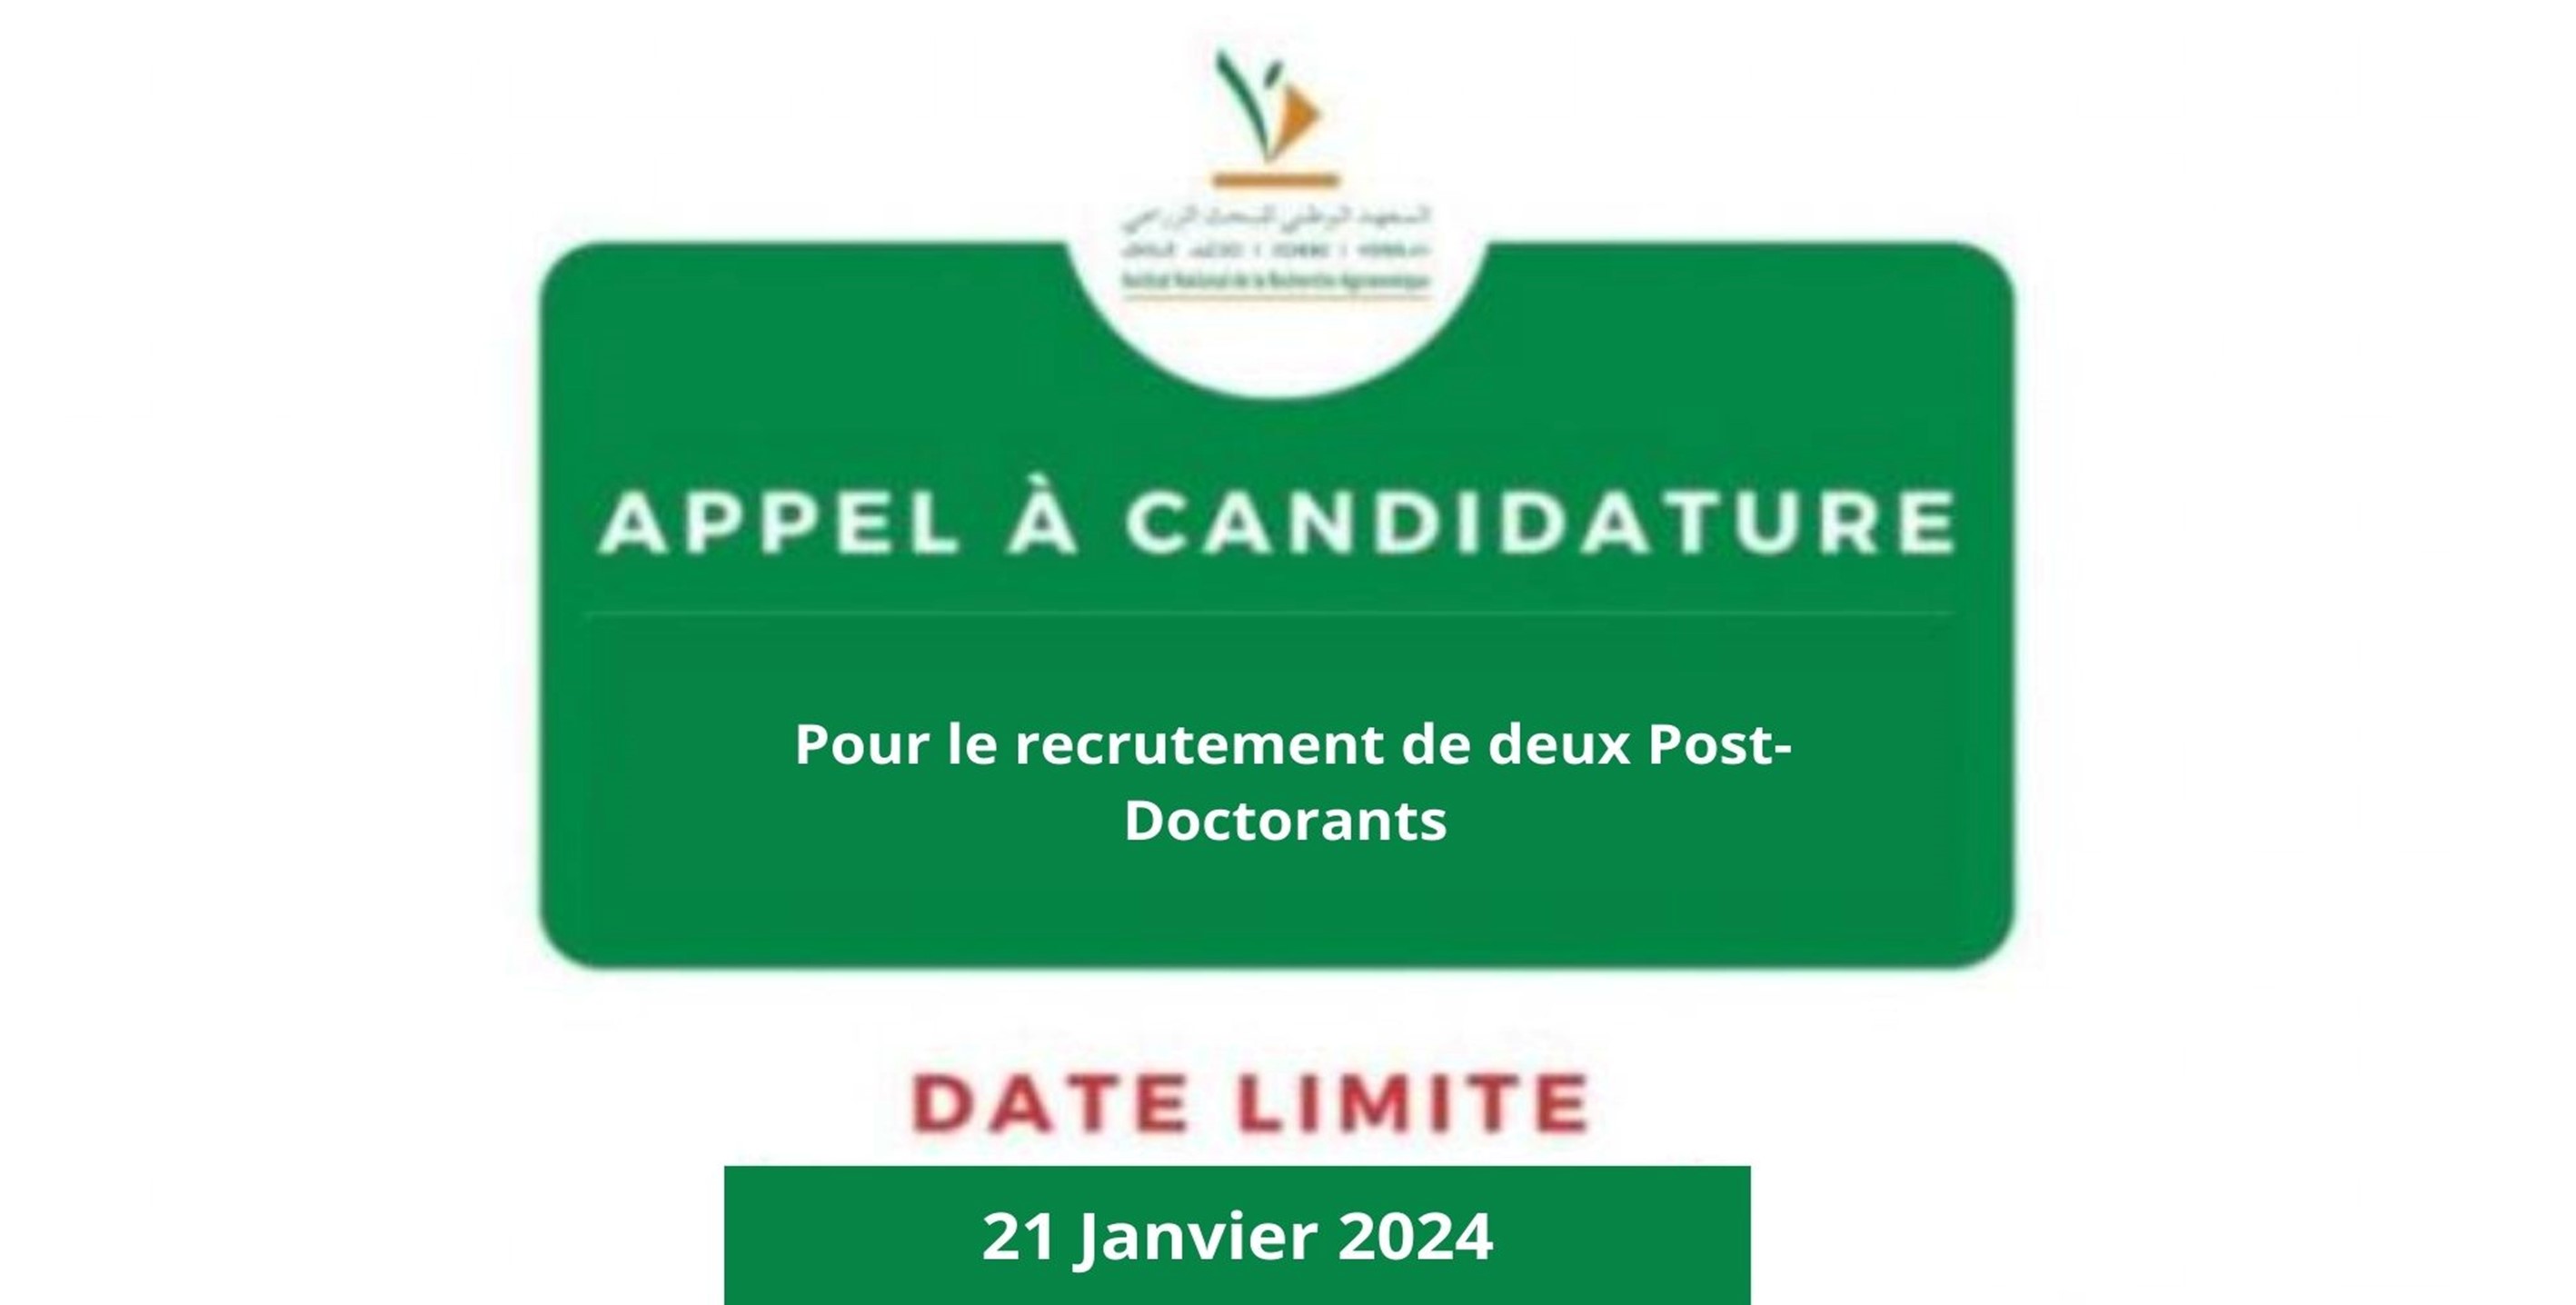 Appel à Candidature pour le Recrutement de deux Post-Doctorants à l'INRA Meknès